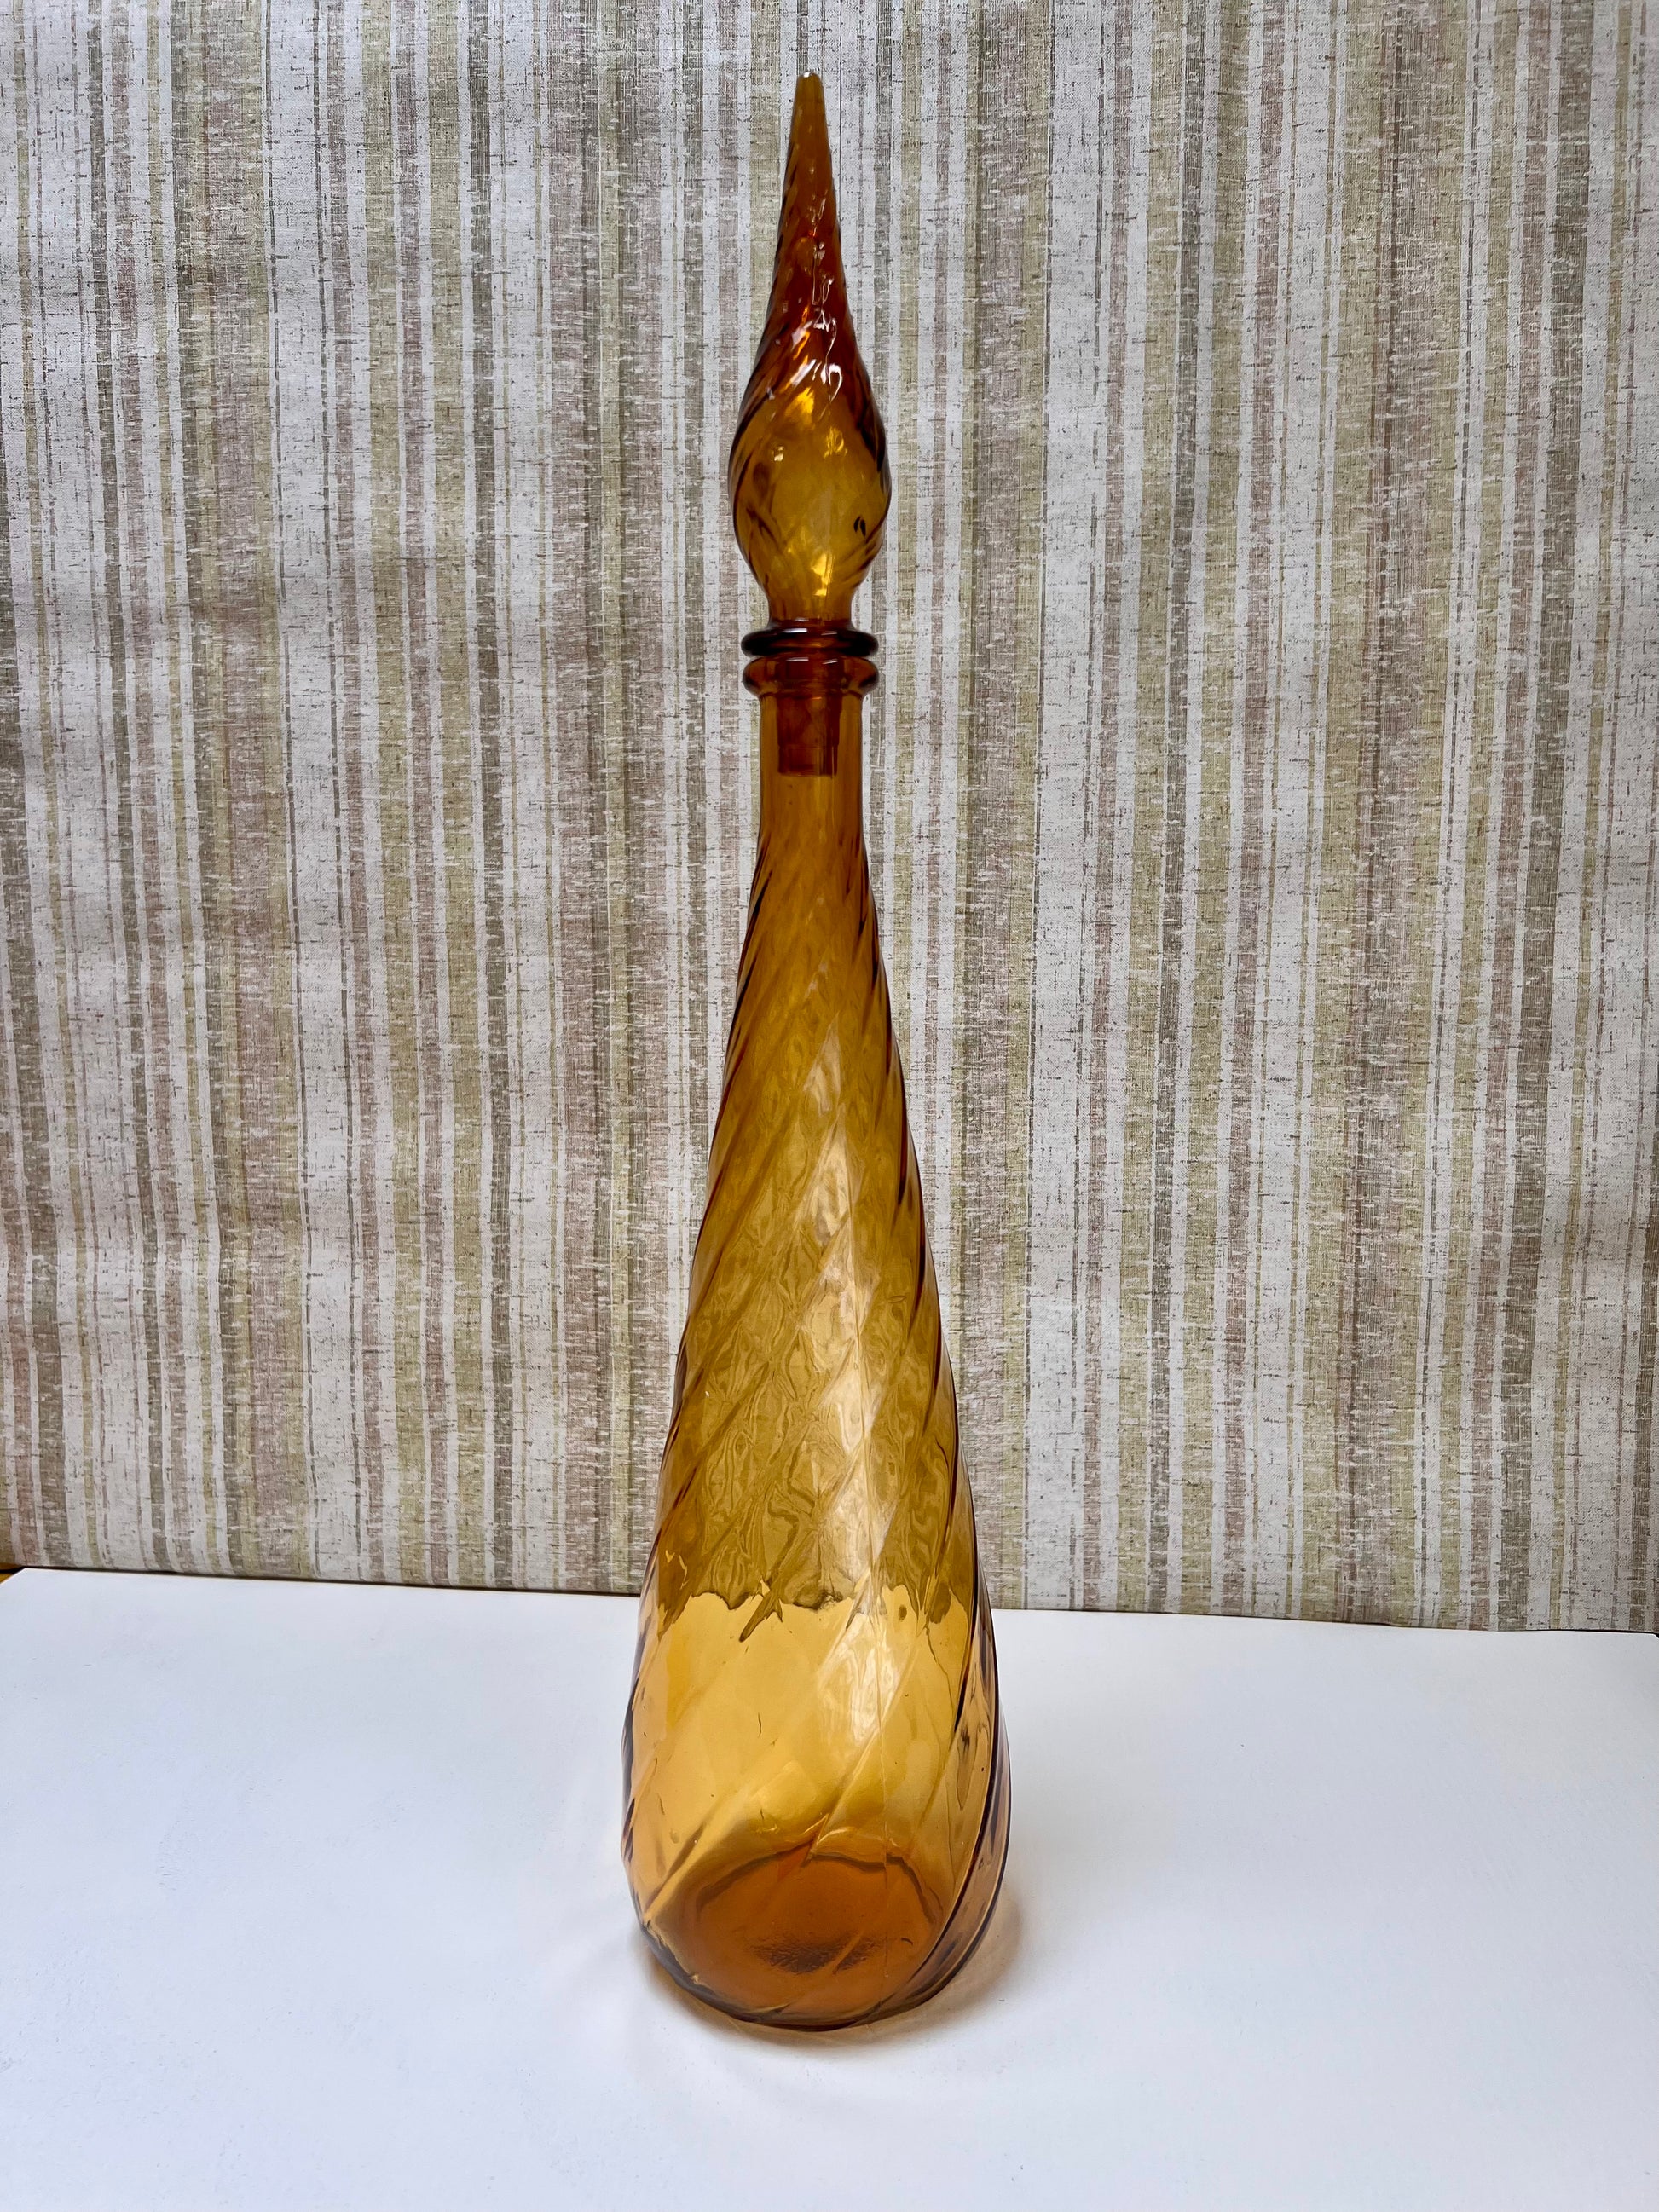 XL Amber SWIRL Pattern Glass Genie Bottle Decanter / Mid-century